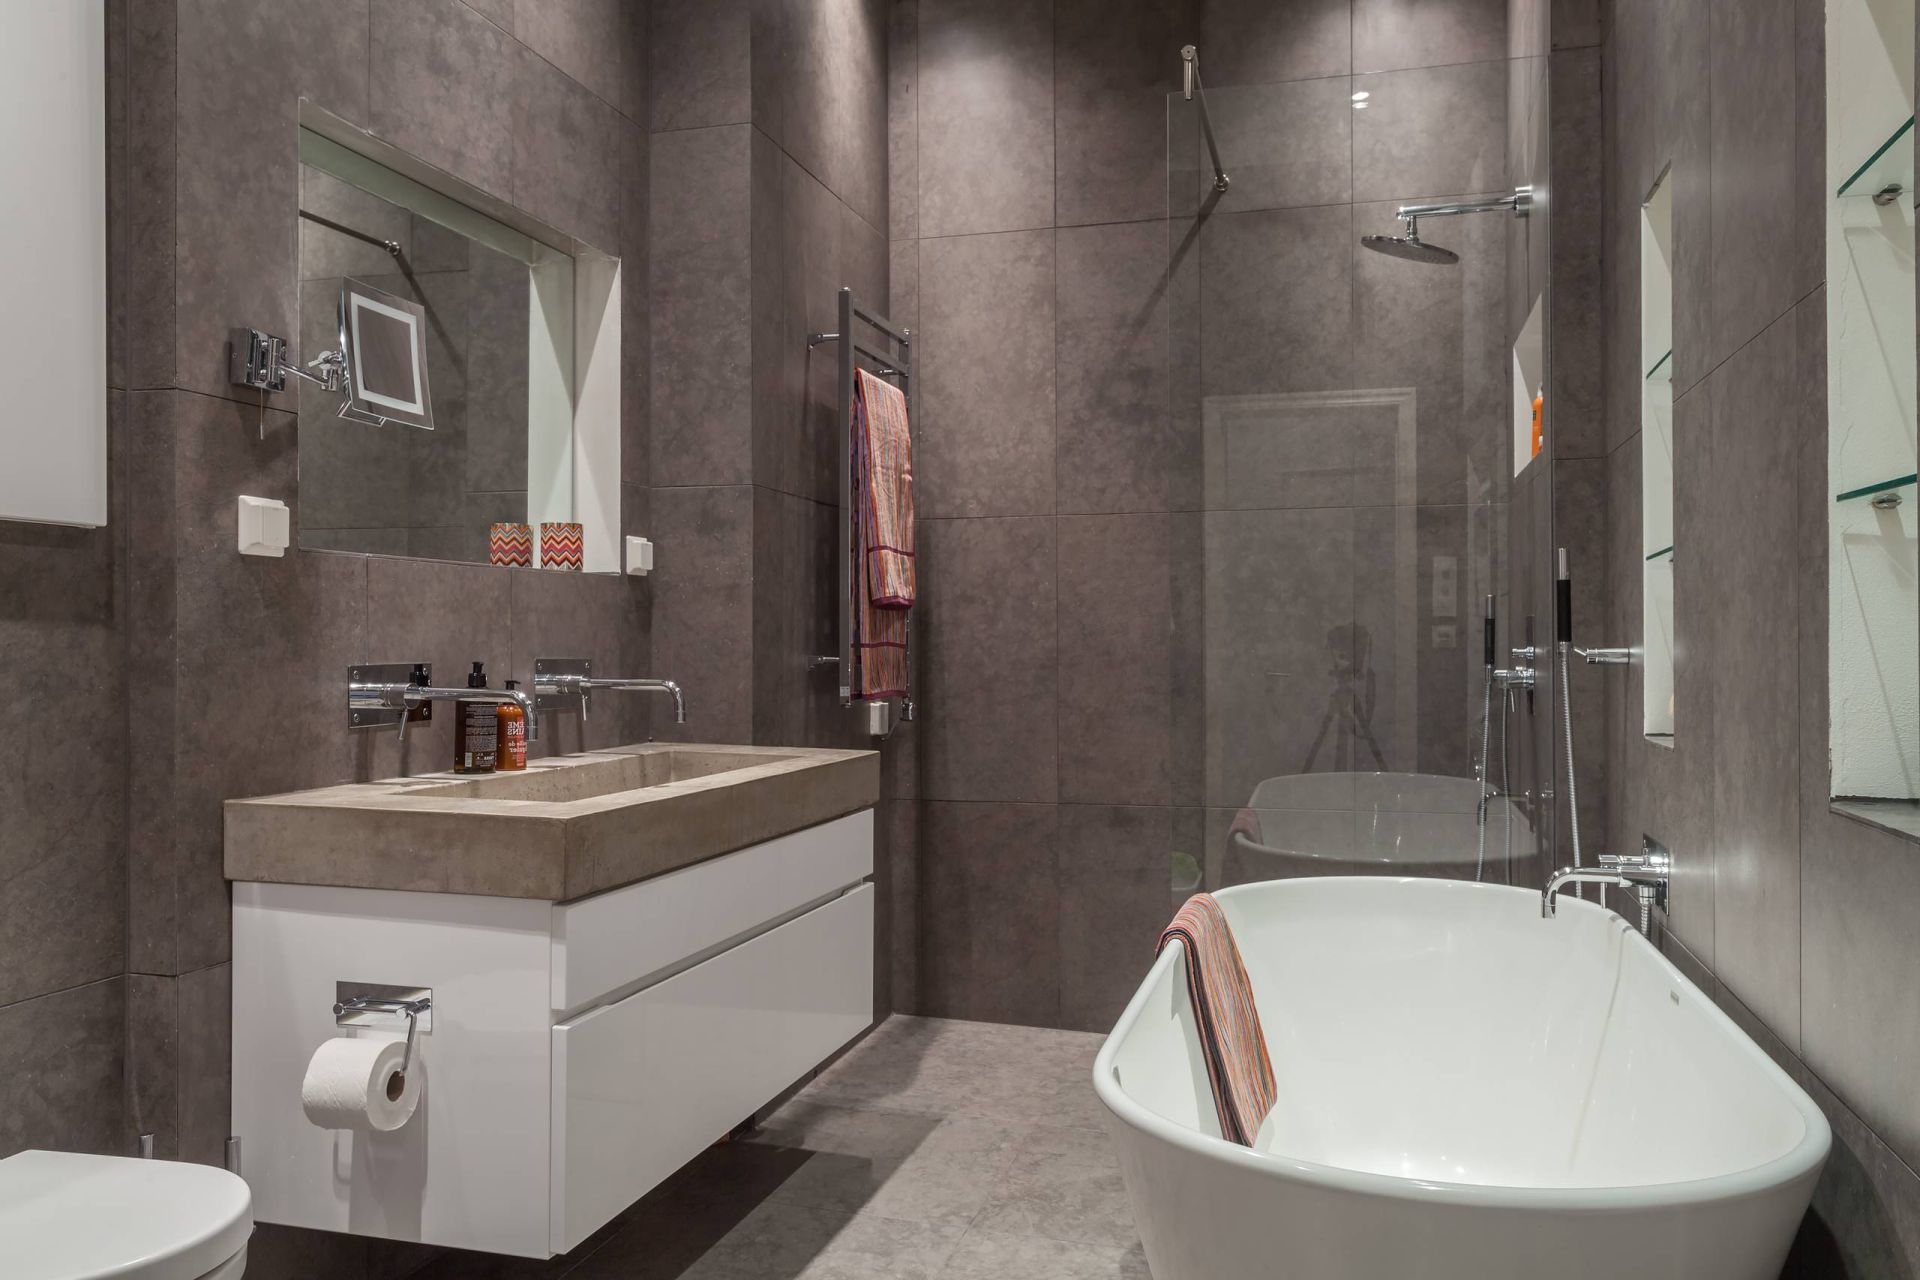 Уникальная черная ванна от Kvadratura.ua - стильный акцент для вашей ванной комнаты